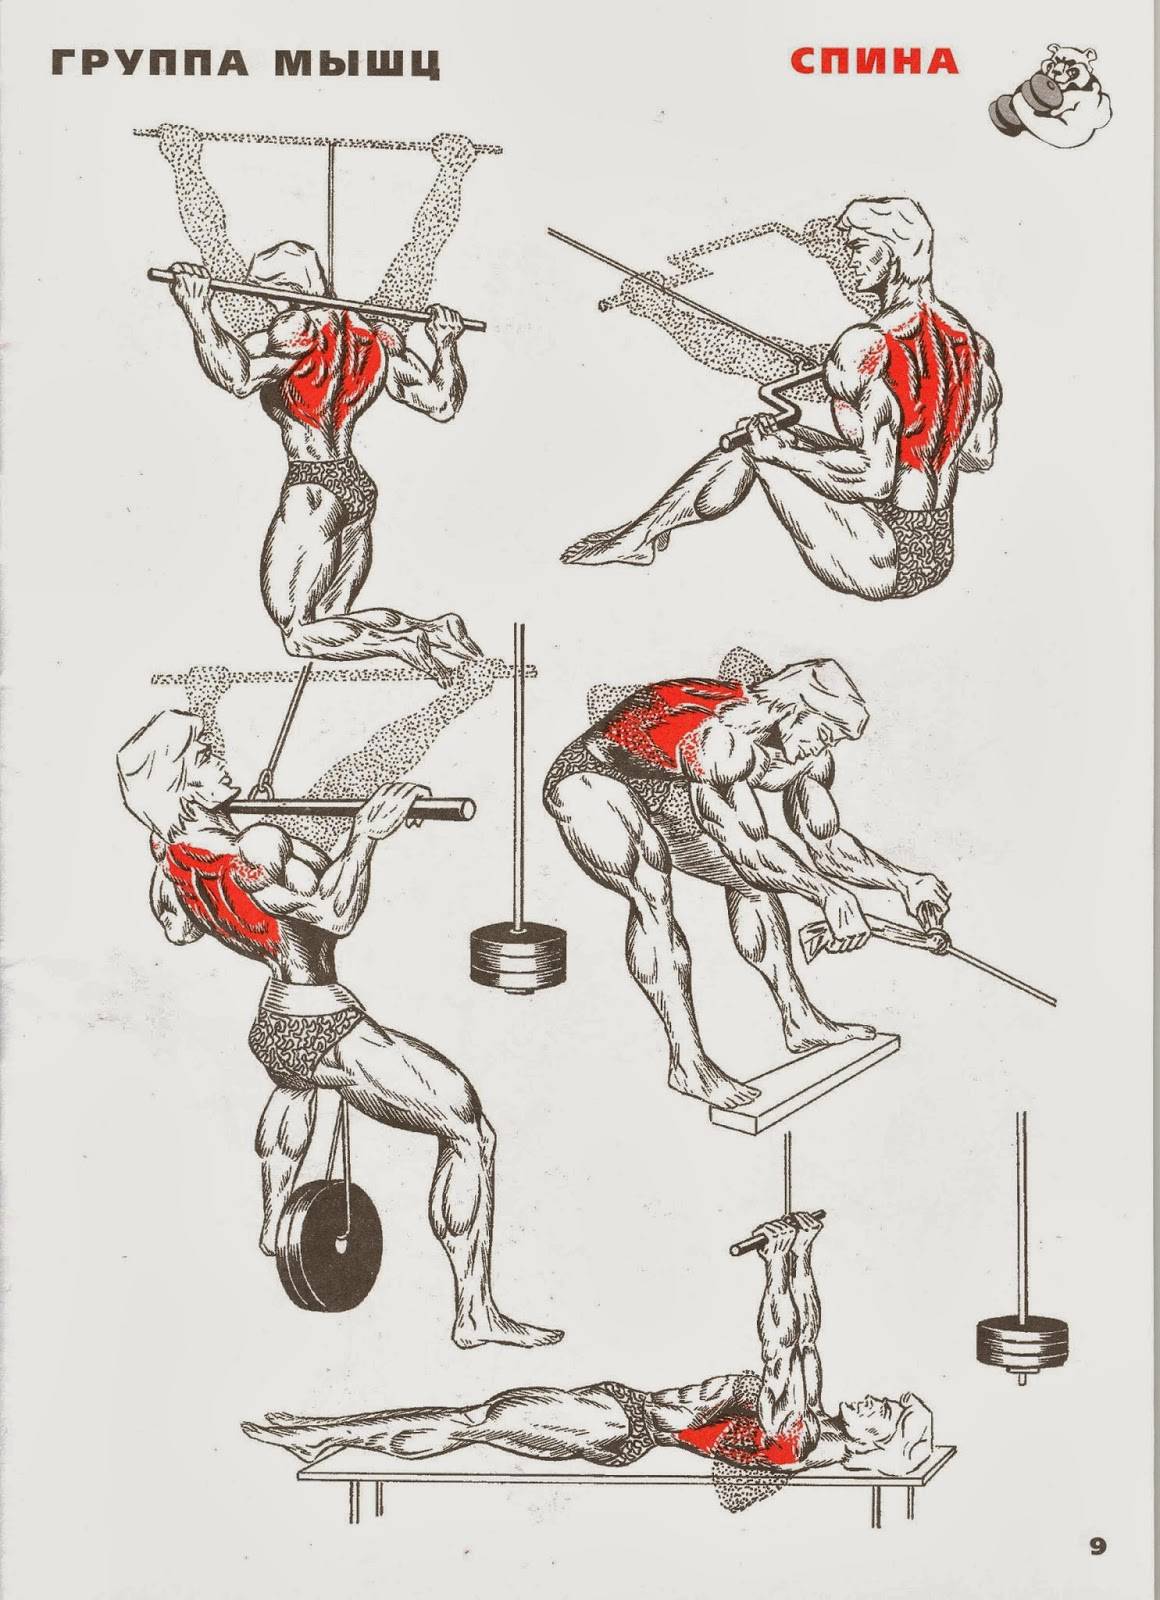 Штанга поясница. Упражнения для тренировки мышц спины в тренажерном зале. Упражнения для прокачки мышц спины. Базовые упражнения на спину в тренажерном зале. Упражнения на спину в тренажерном зале для мужчин.